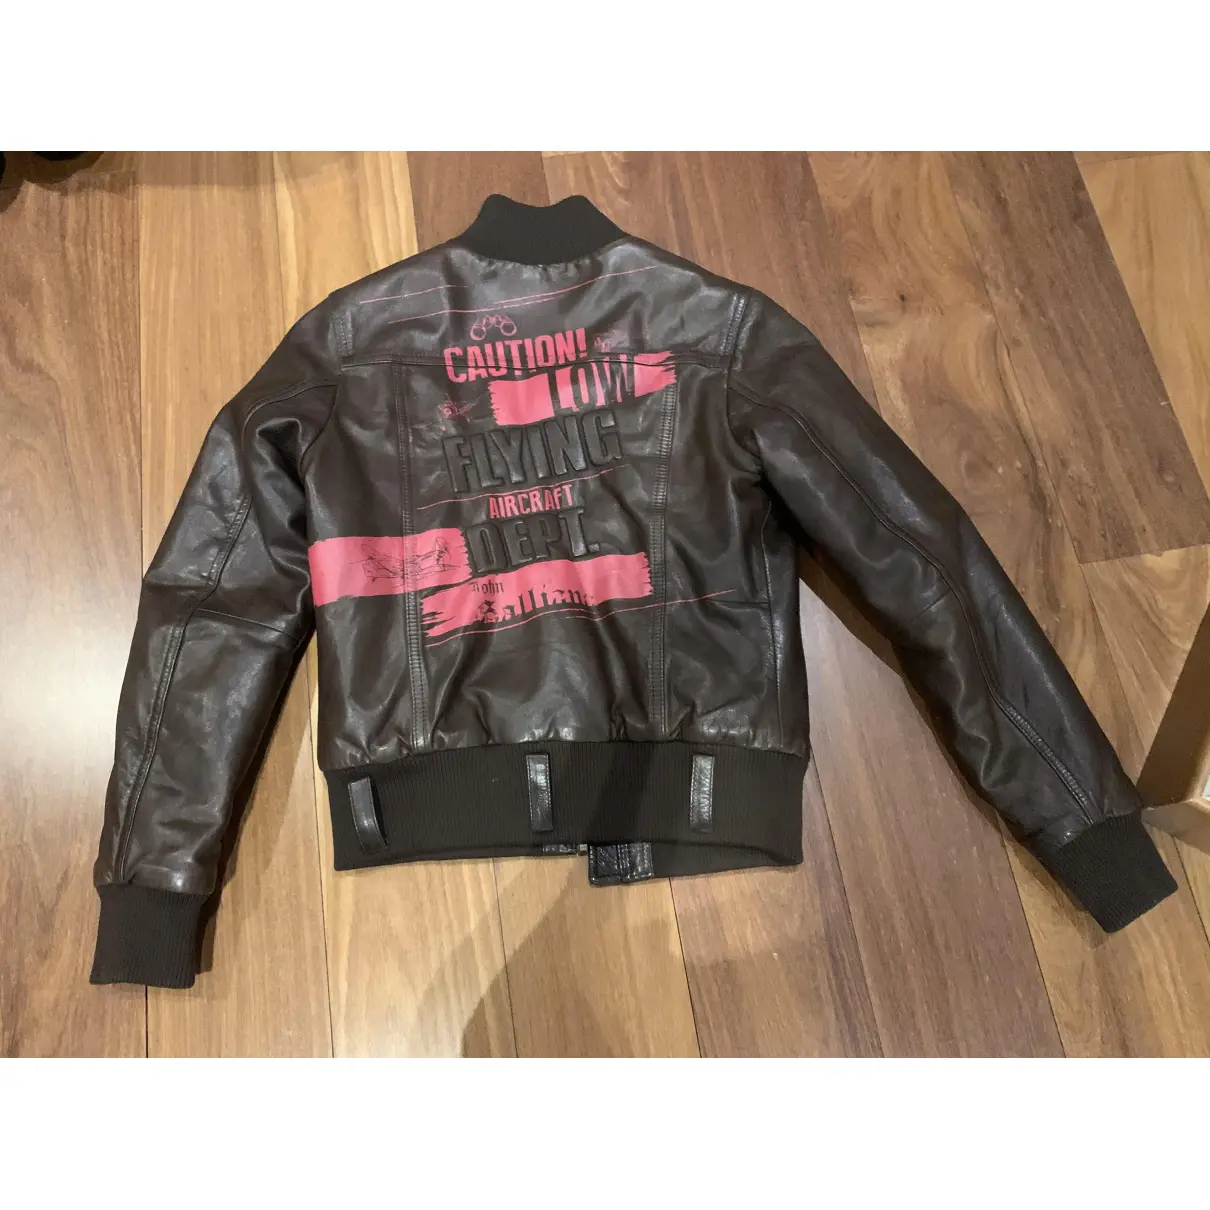 Buy Galliano Leather jacket online